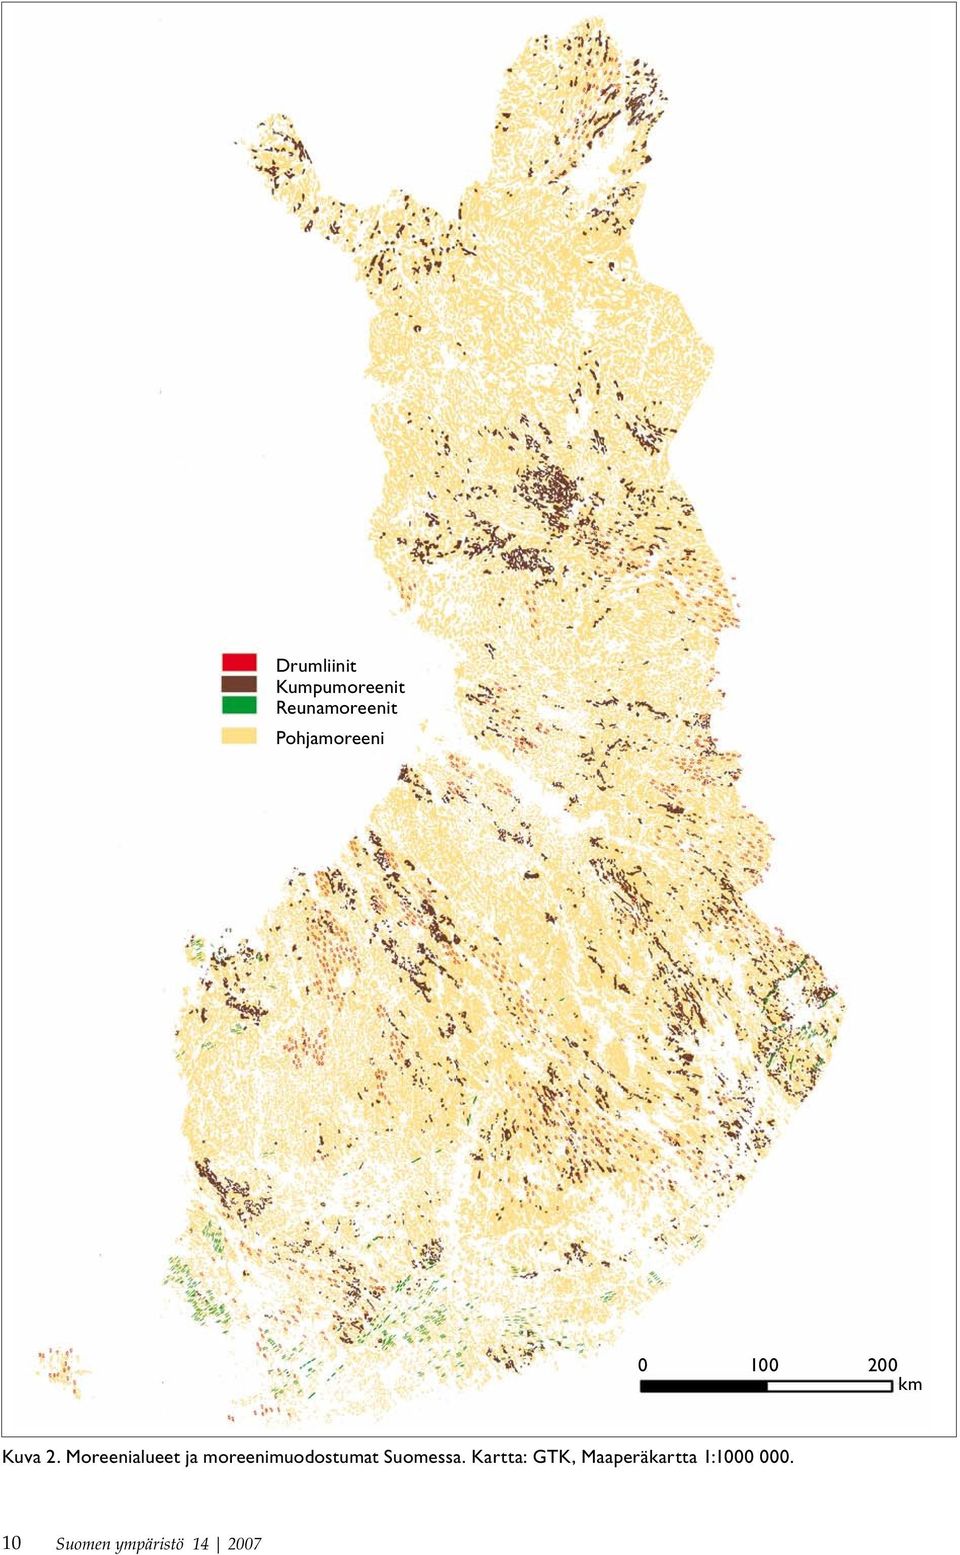 Moreenialueet ja moreenimuodostumat Suomessa